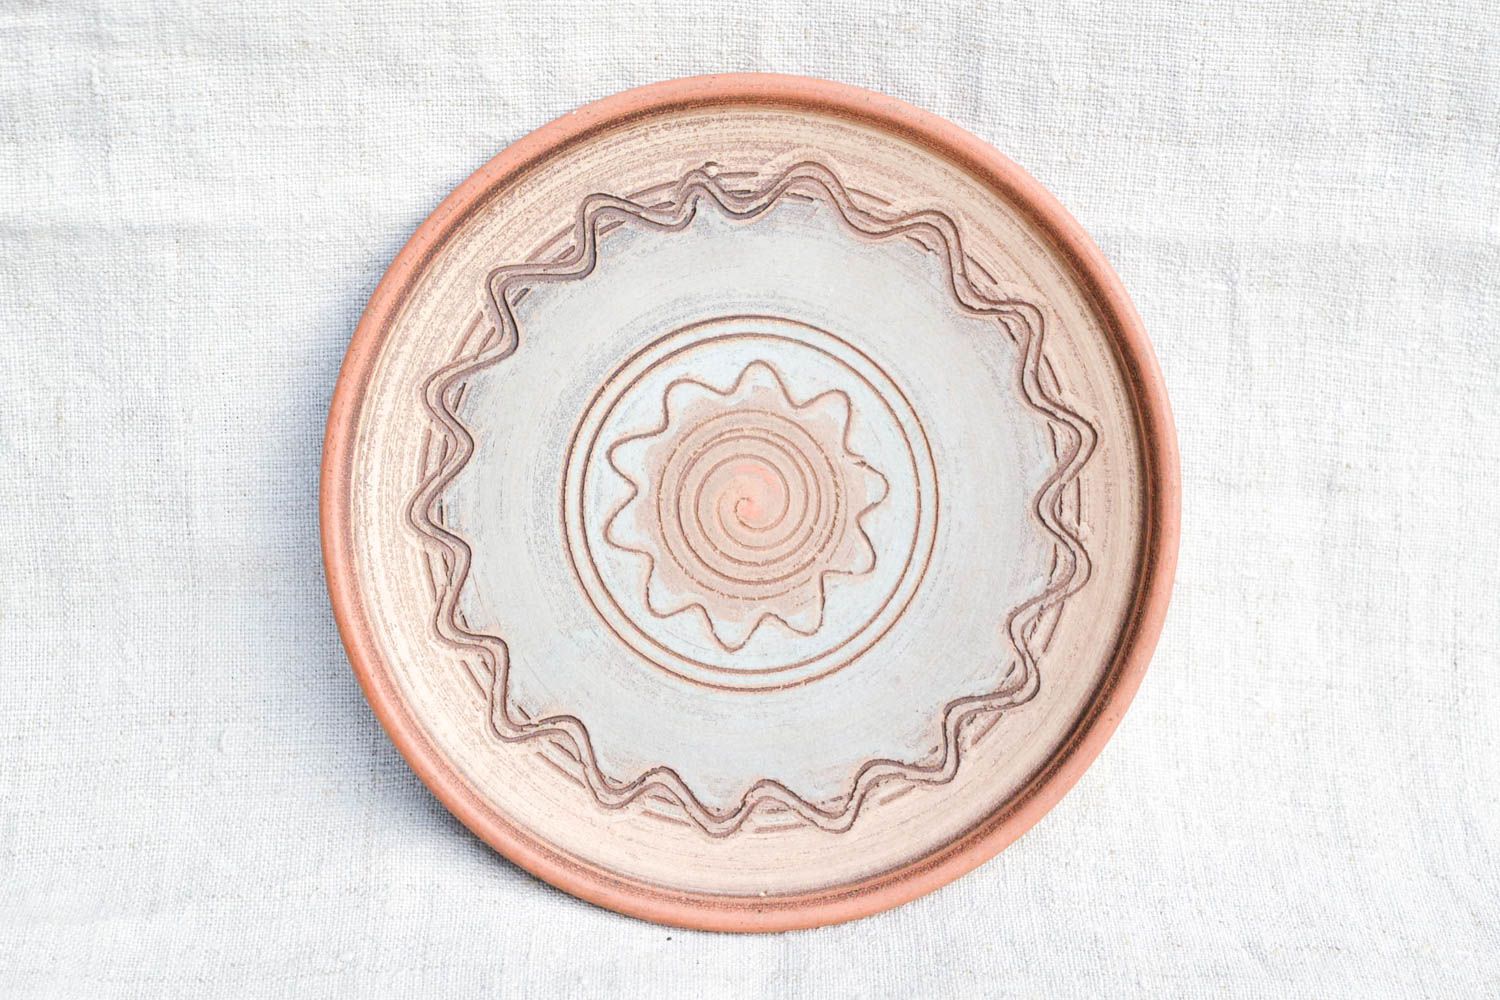 Homemade home decor ceramic plate ceramic dishes souvenir ideas handmade gifts photo 3